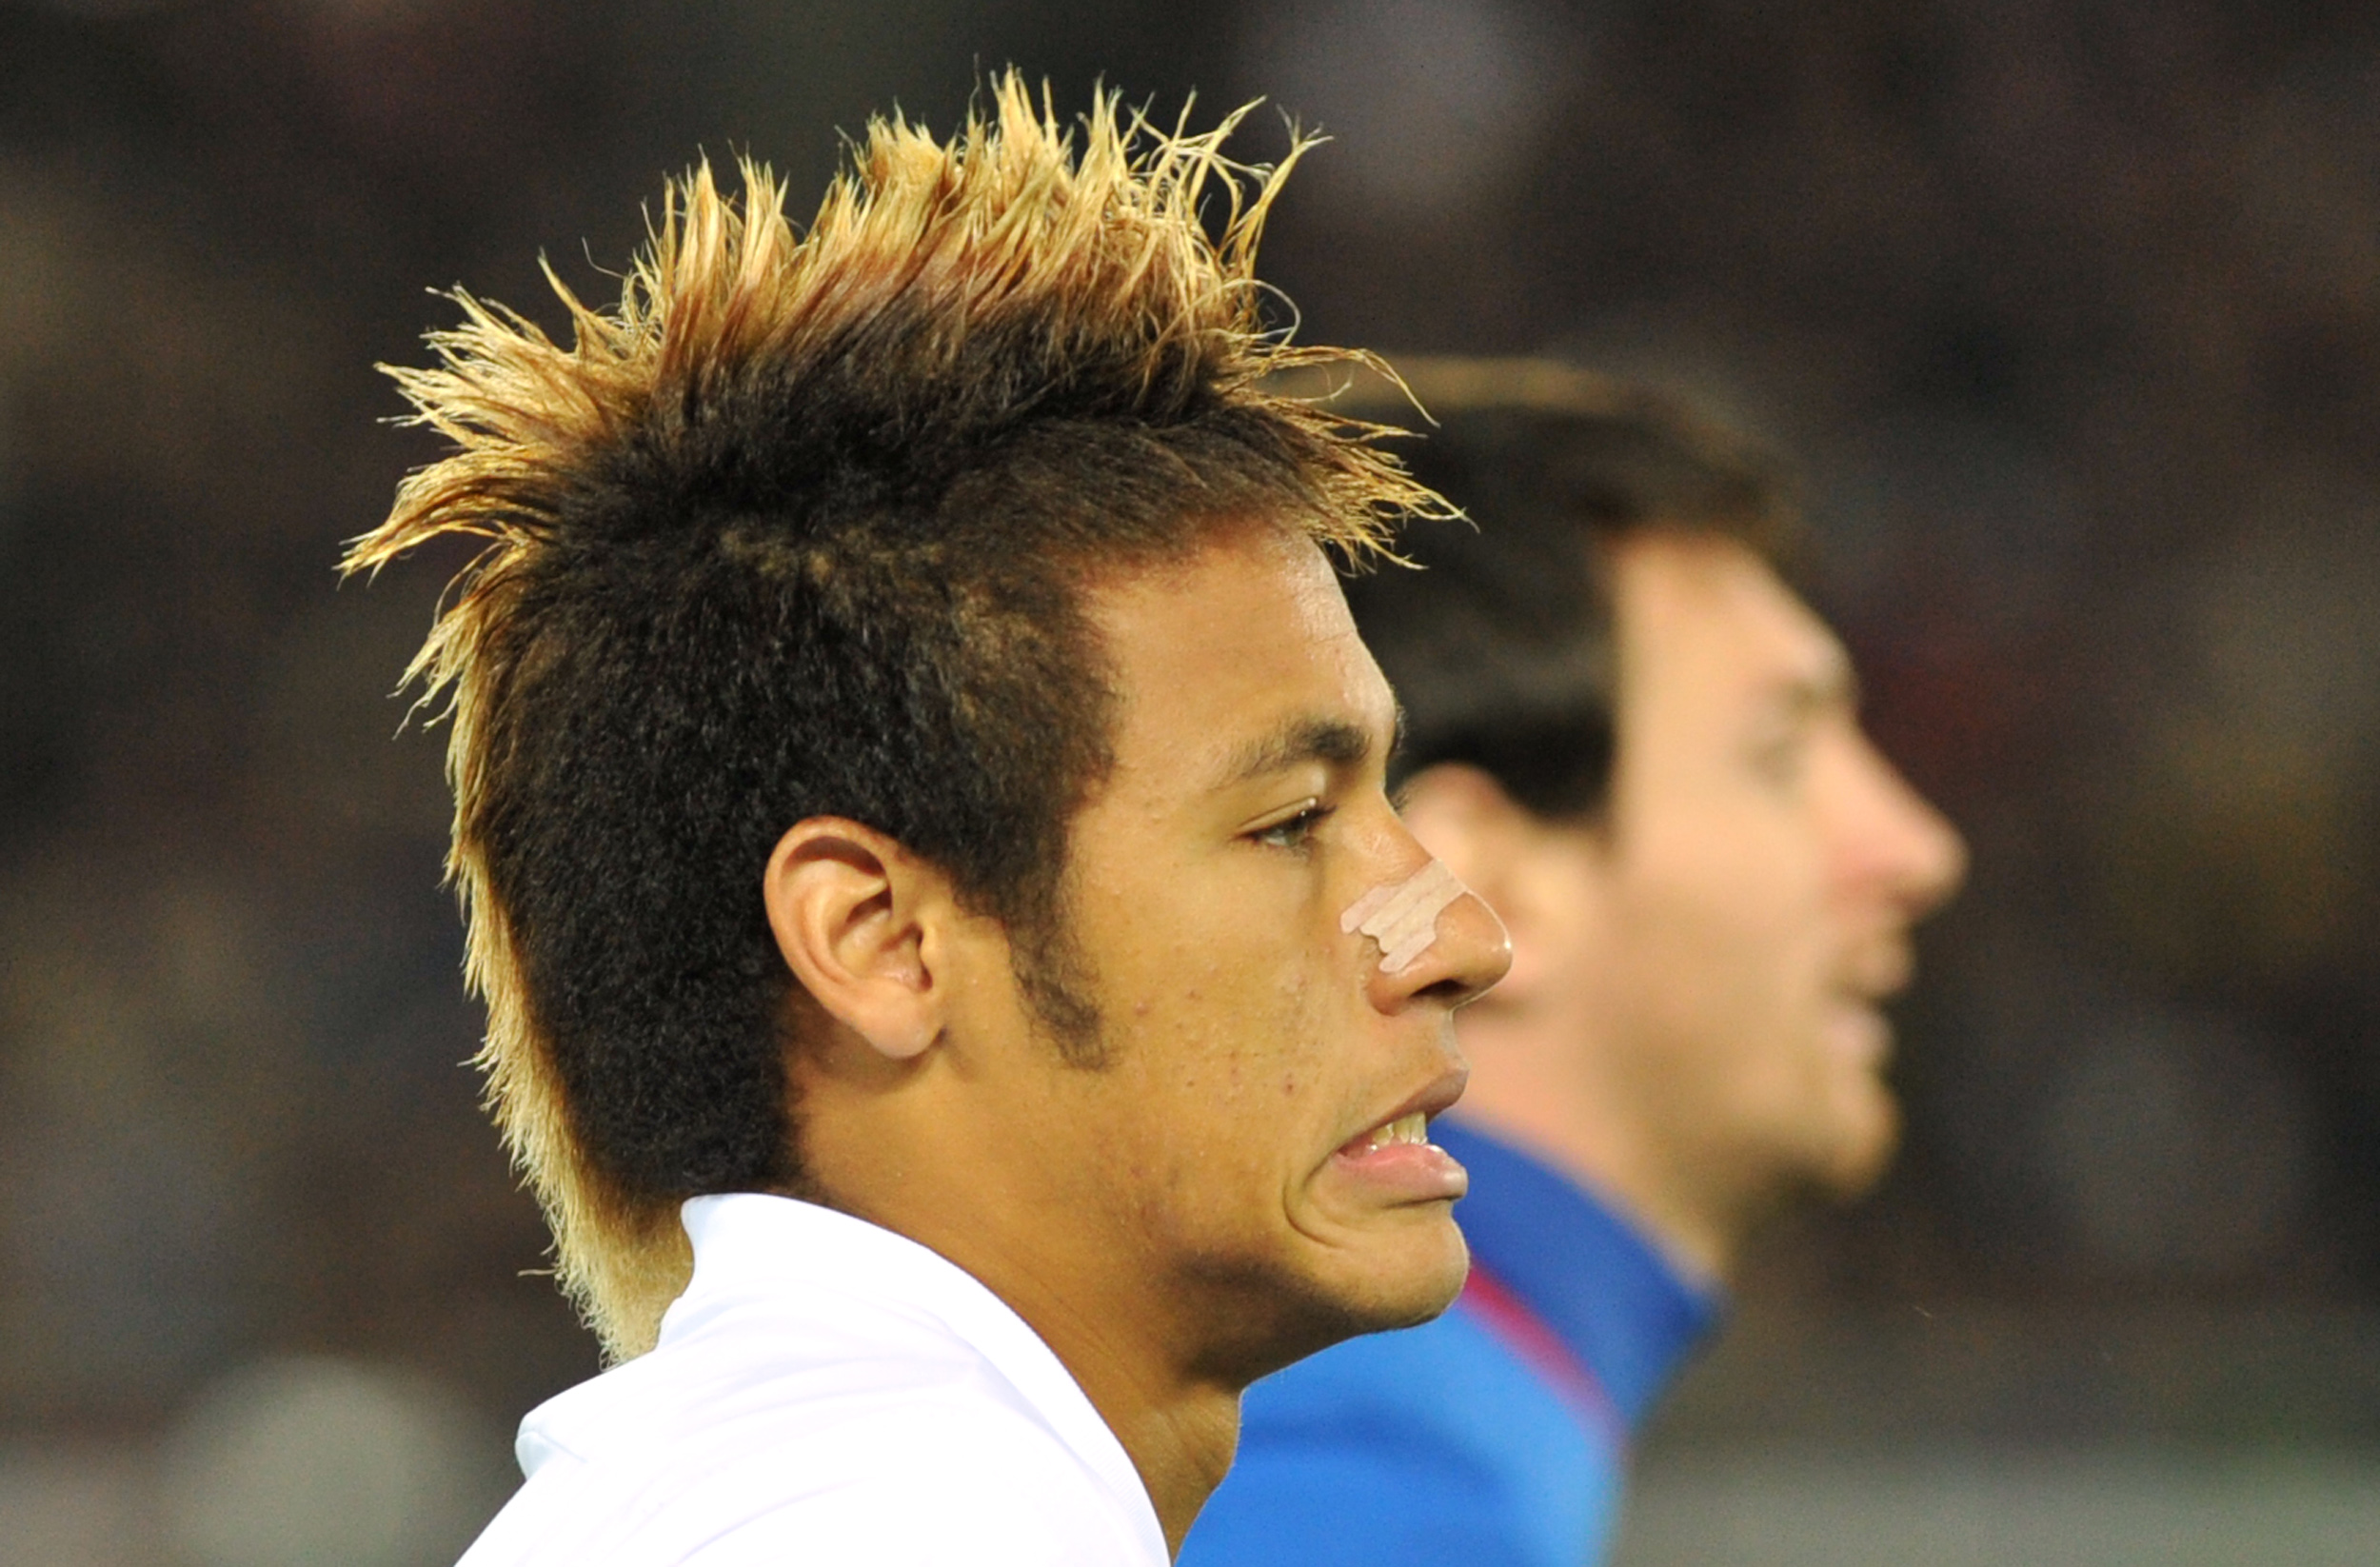 Neymar cambia look in uno spot tv (VIDEO)